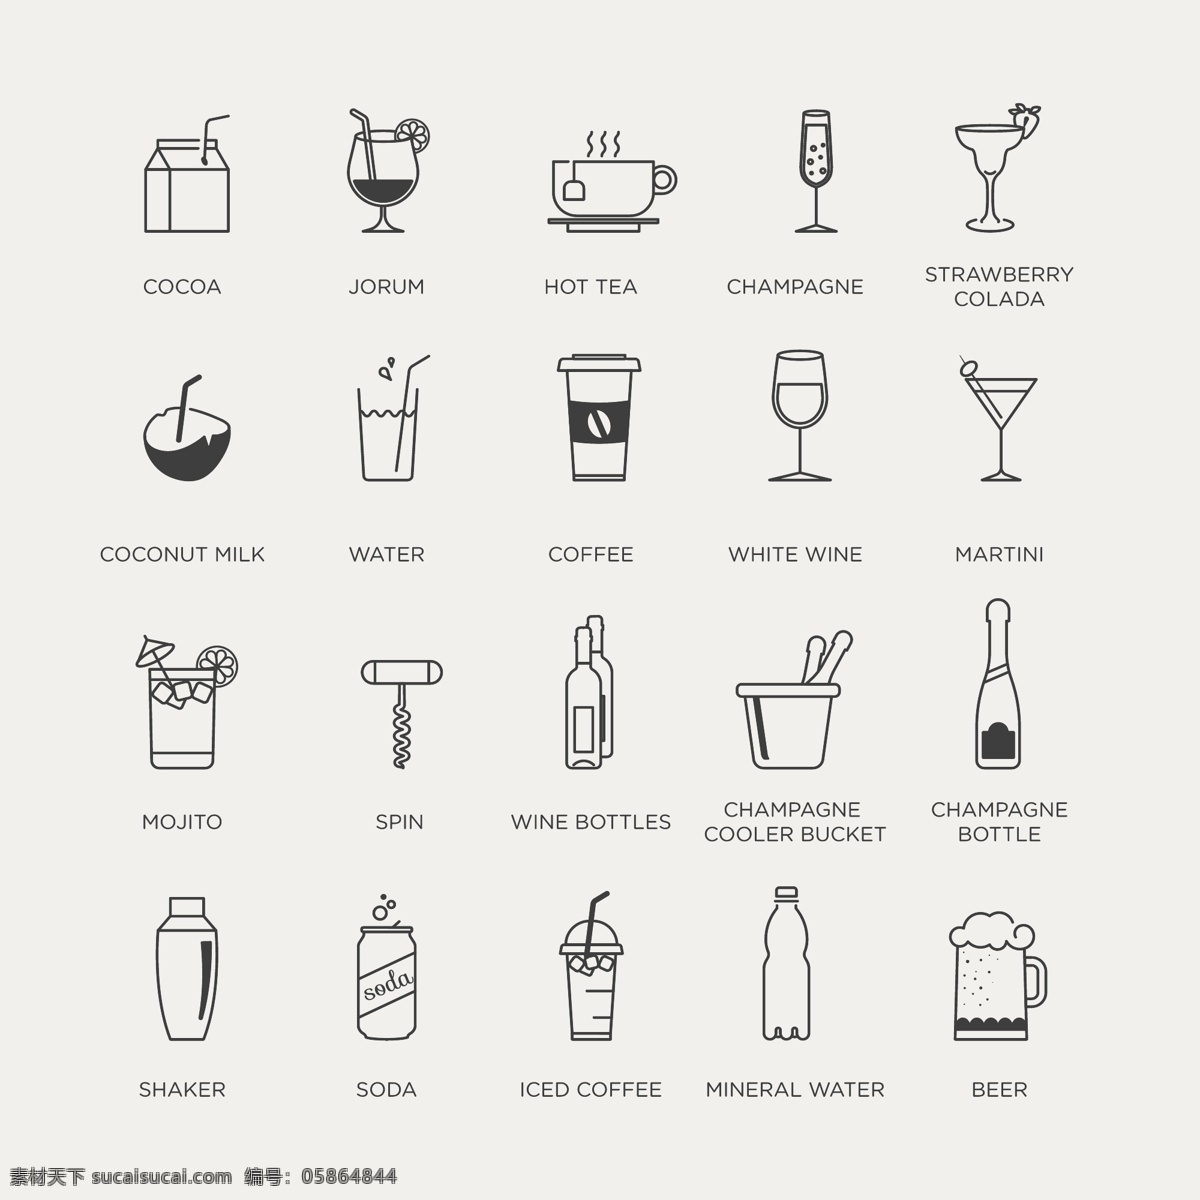 饮料 图标 黑白 线 稿 图标素材 饮料图标 食物图标 图标集合 矢量图标